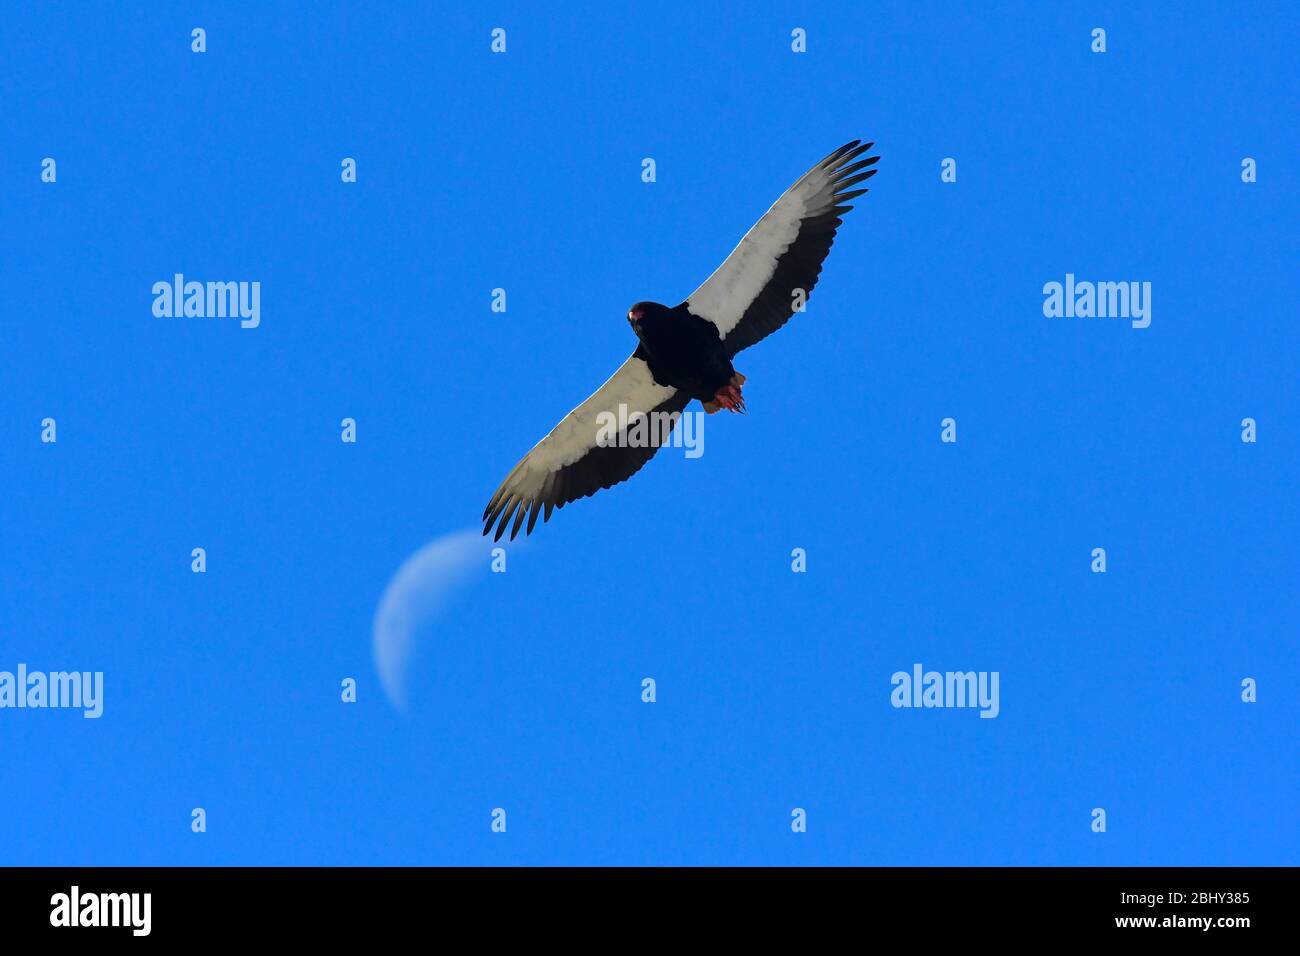 Observación de aves en África. Águila bataleur en vuelo, la luna de la hoz en el fondo. Foto de stock